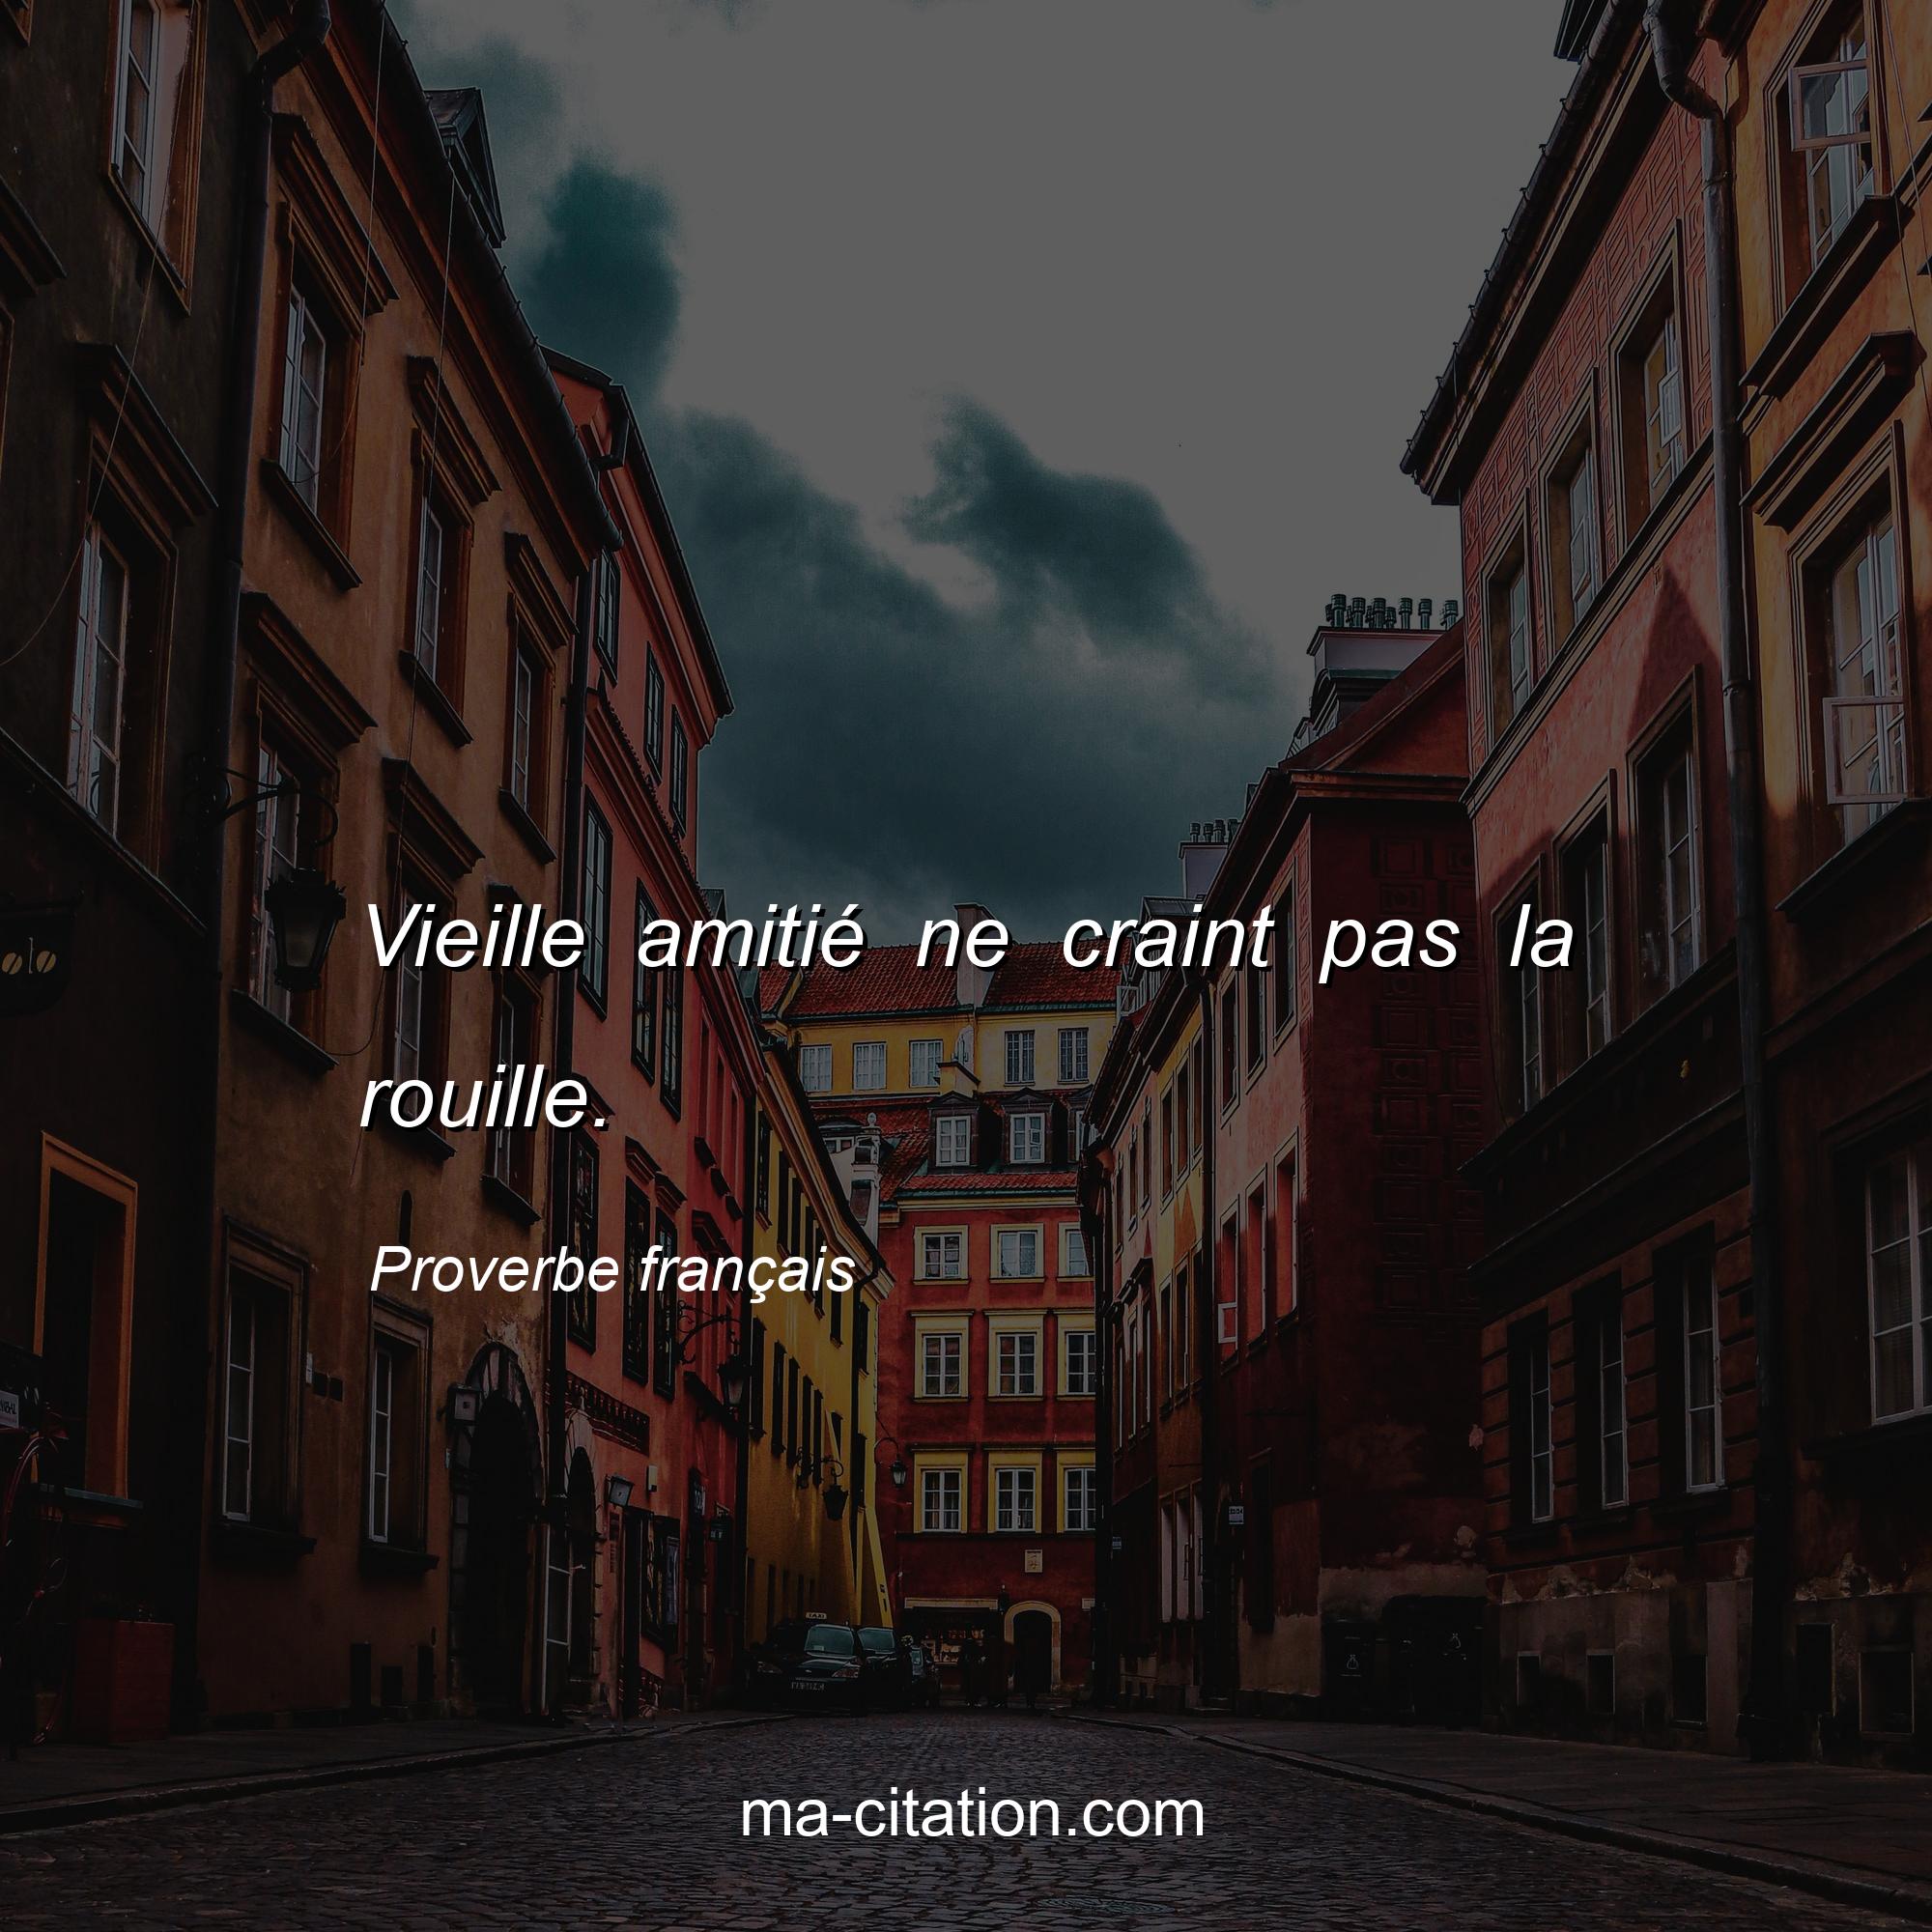 Proverbe français : Vieille amitié ne craint pas la rouille.